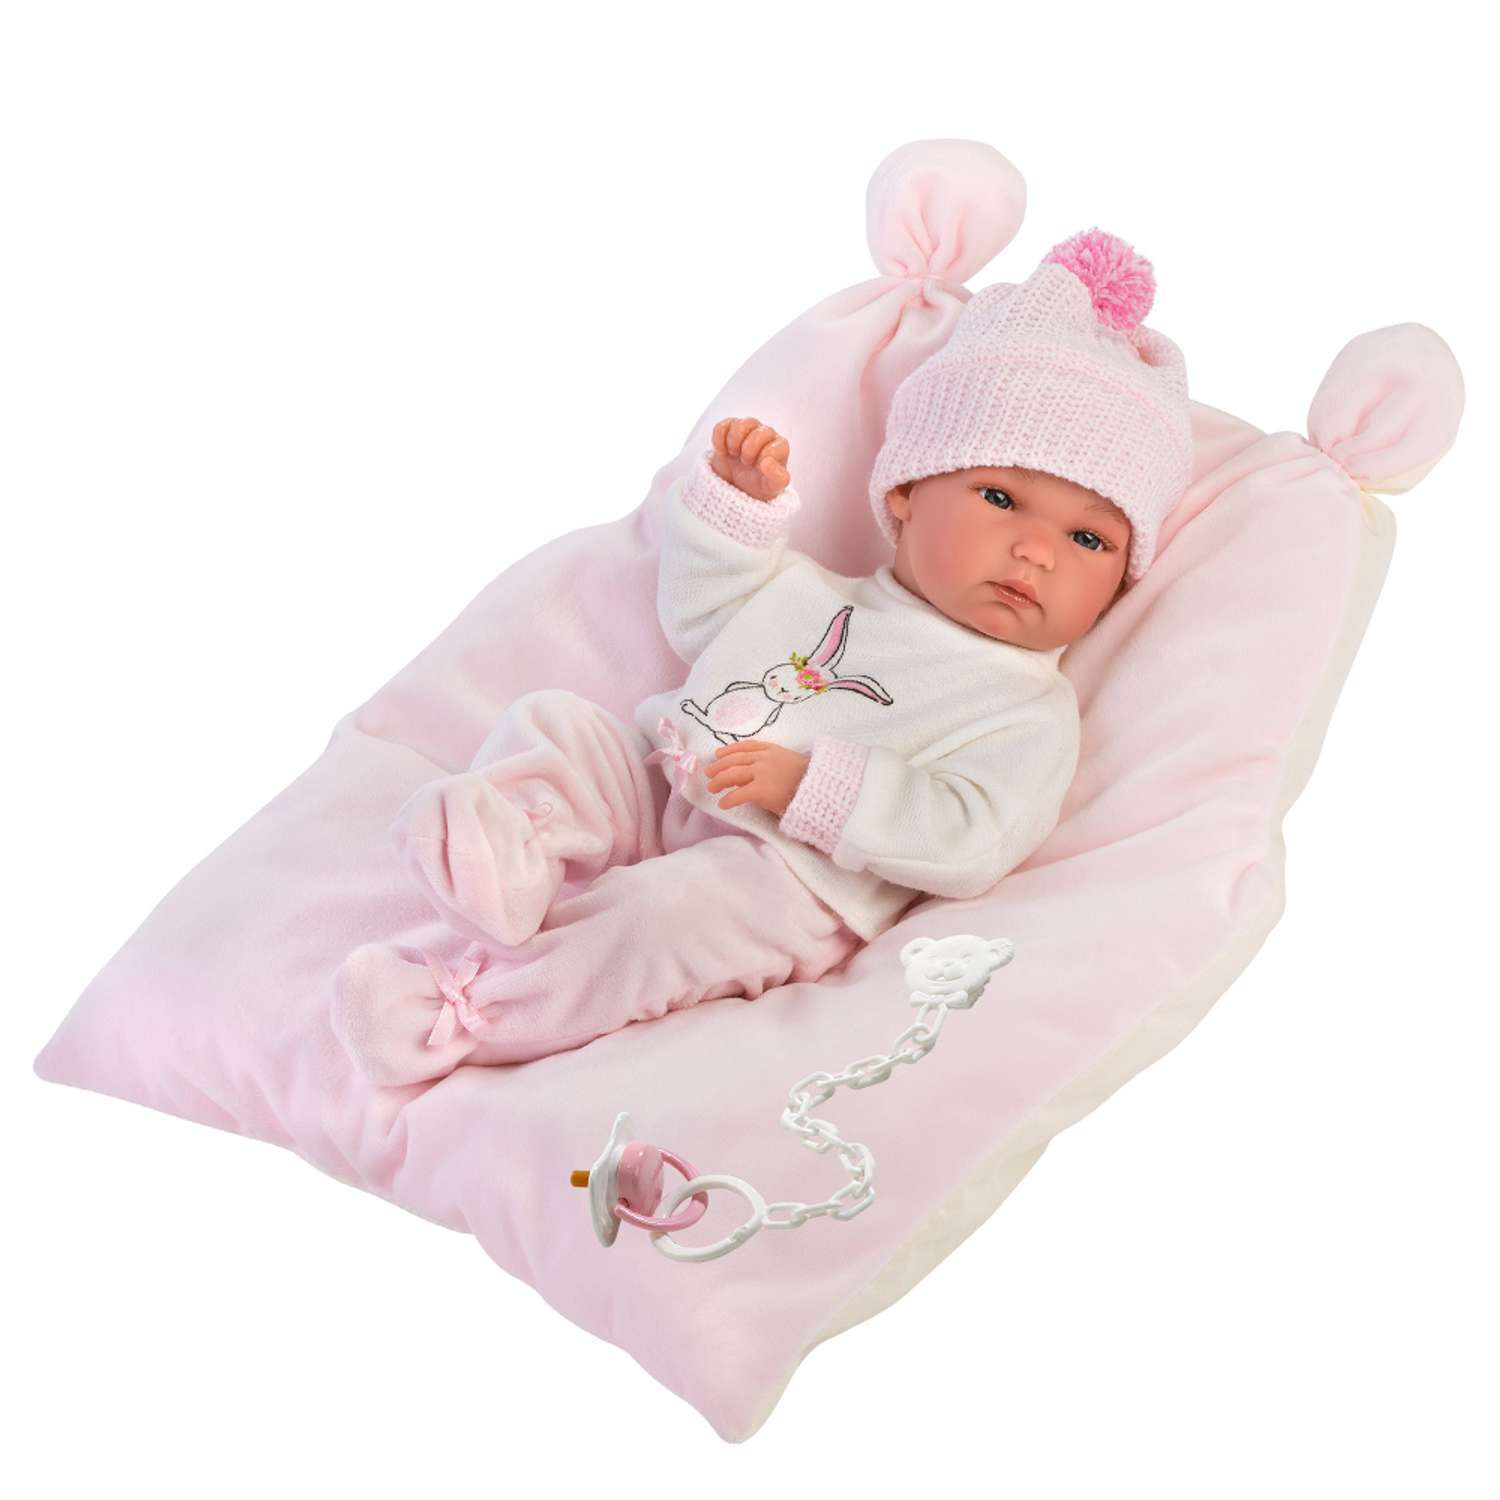 Кукла LLORENS младенец в розовом c одеяльцем 35 см L 63556 - фото 1